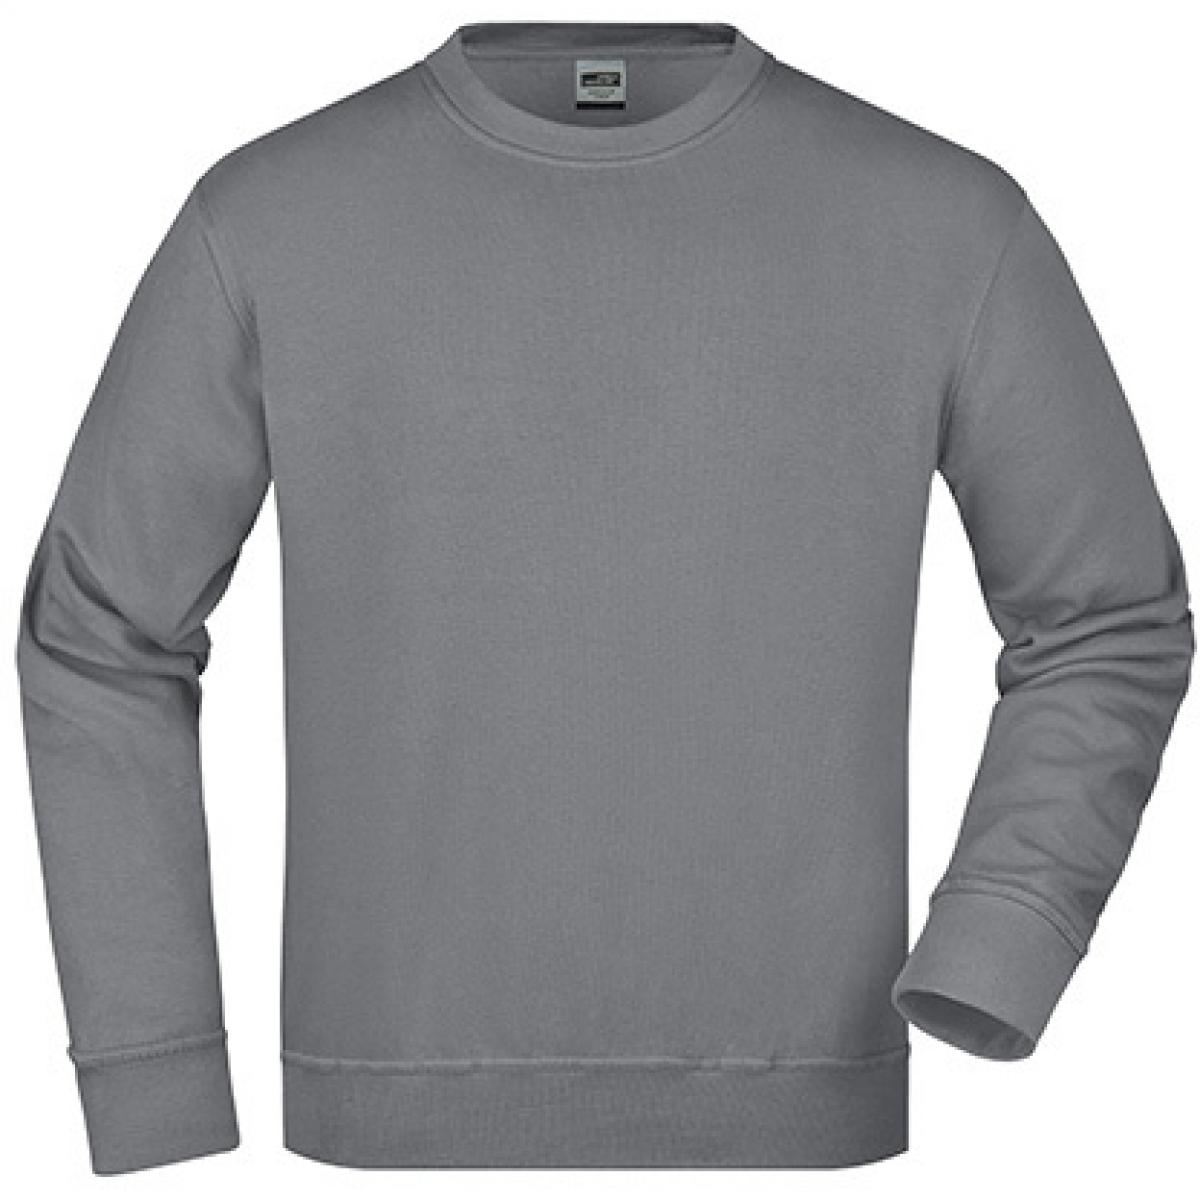 Hersteller: James+Nicholson Herstellernummer: JN840 Artikelbezeichnung: Workwear Sweatshirt / Waschbar bis 60C Farbe: Dark Grey (Solid)